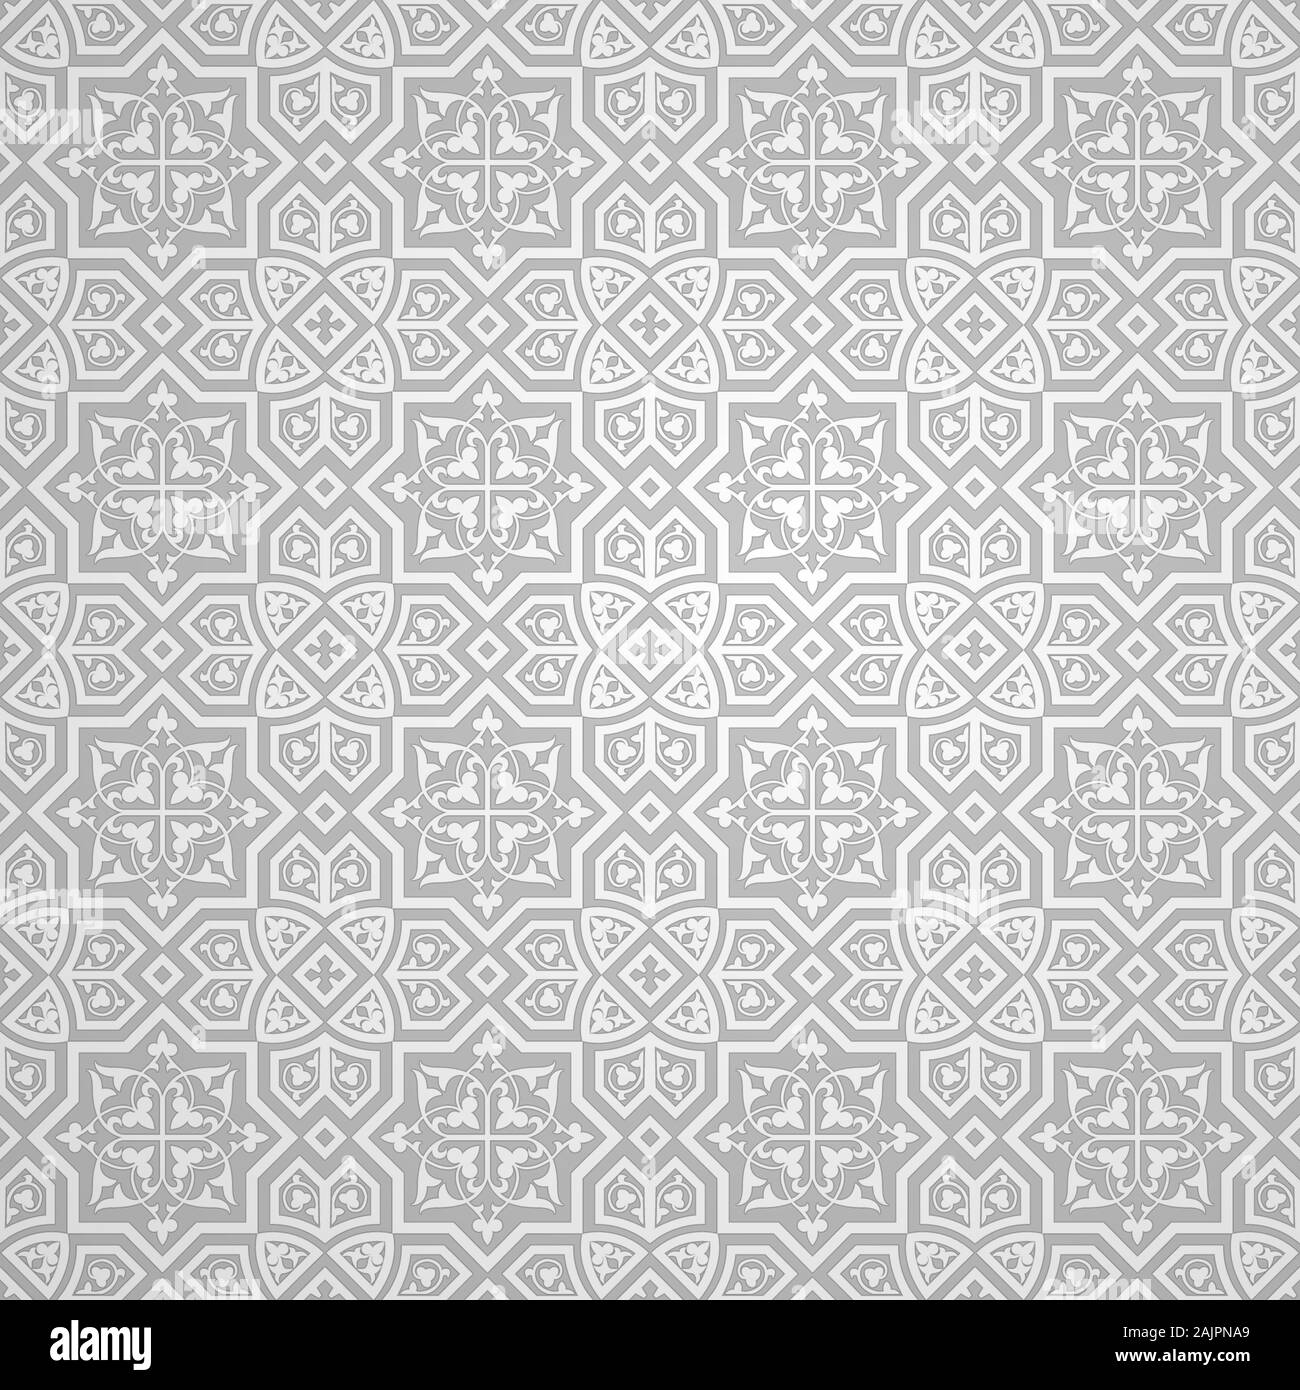 Islamische ornament Vektor, Arabische geometrische Muster Hintergrund, 3d-ornamentale Form, Textur 1001 traditionelles Motiv - Abstrakt vector Hintergrund Stock Vektor